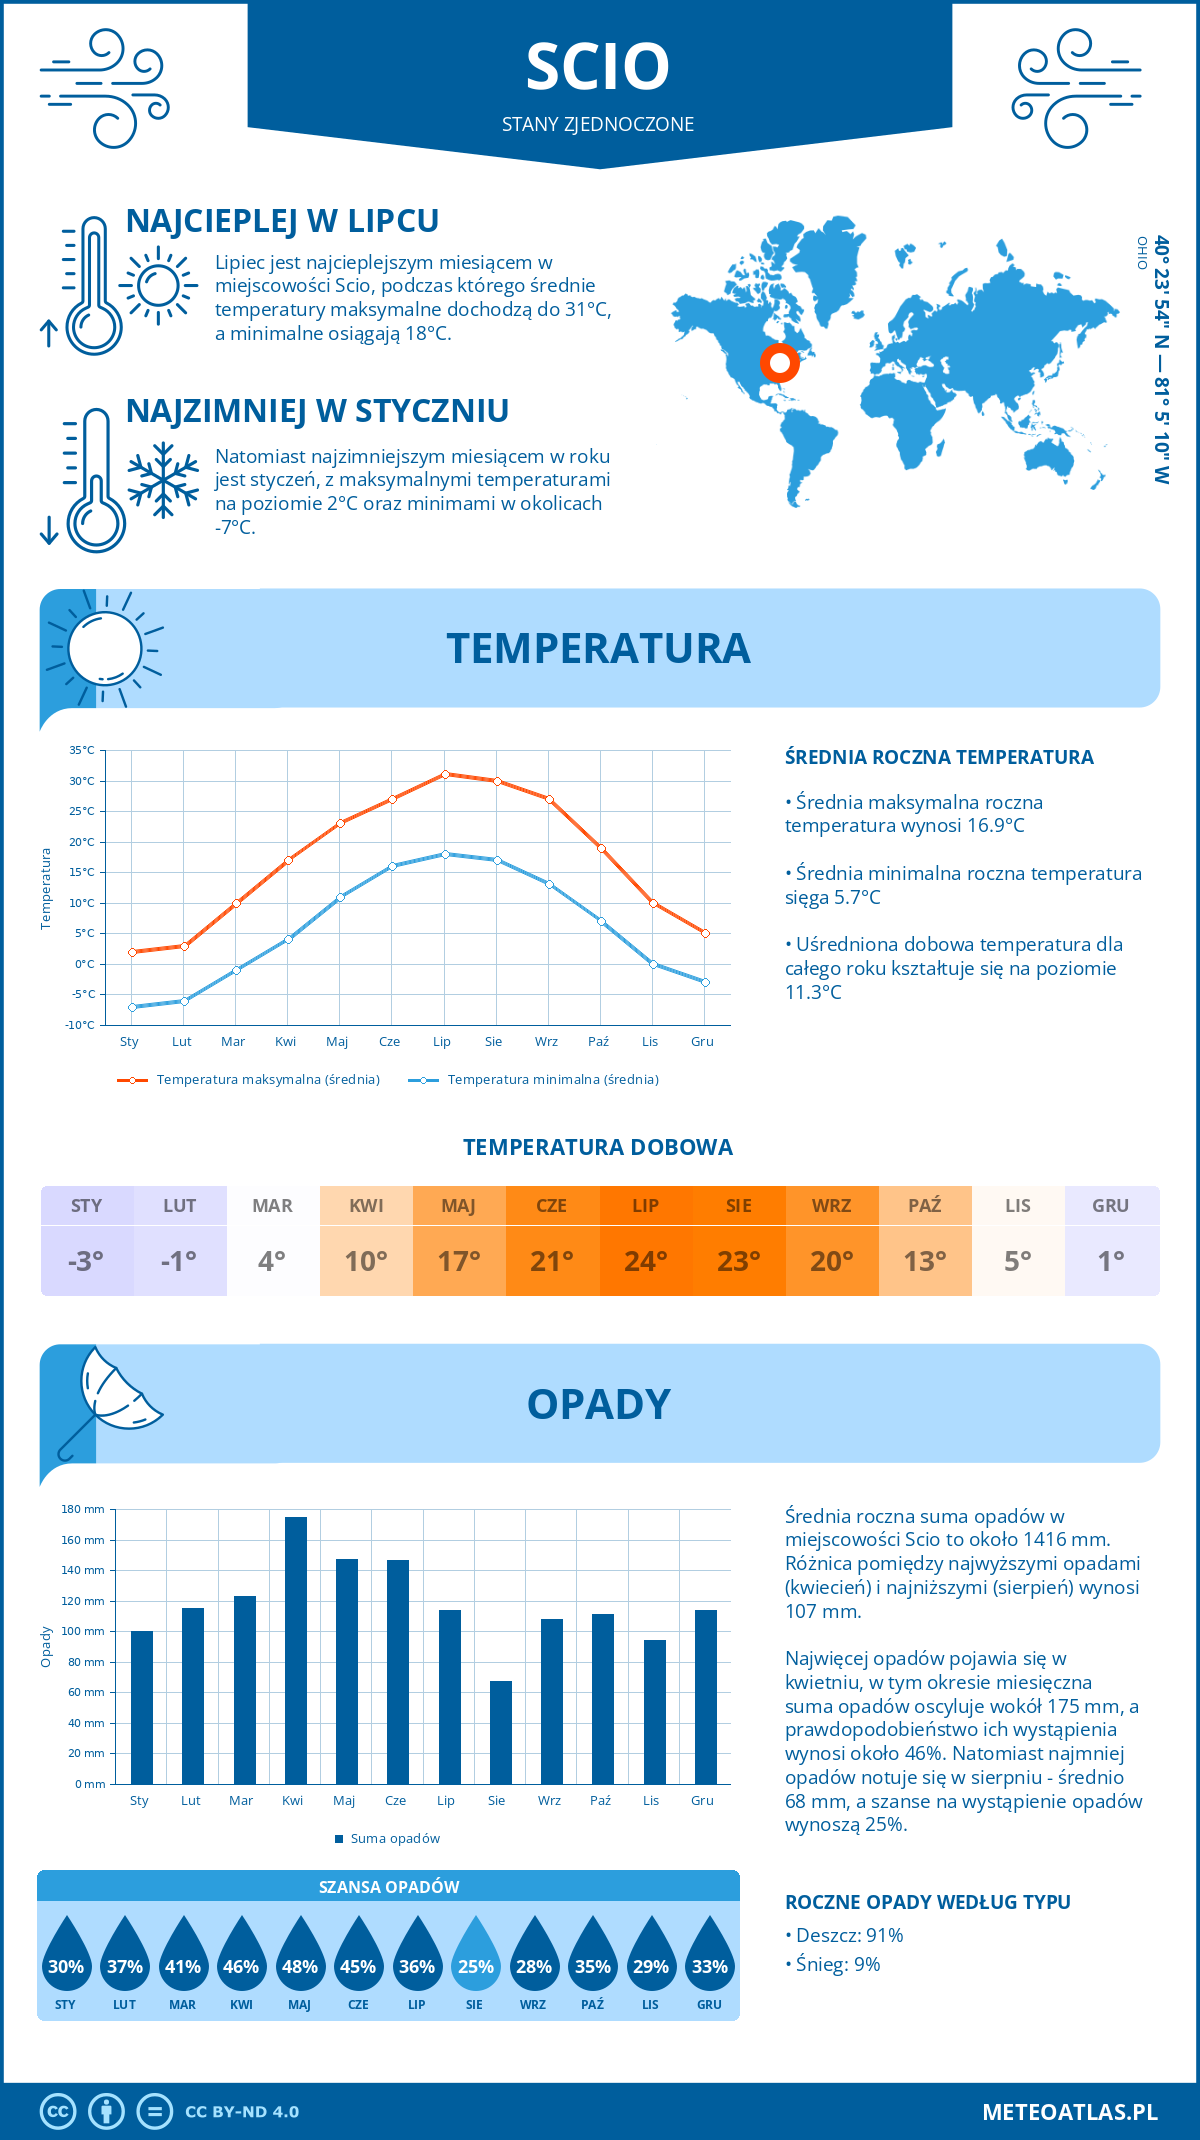 Pogoda Scio (Stany Zjednoczone). Temperatura oraz opady.